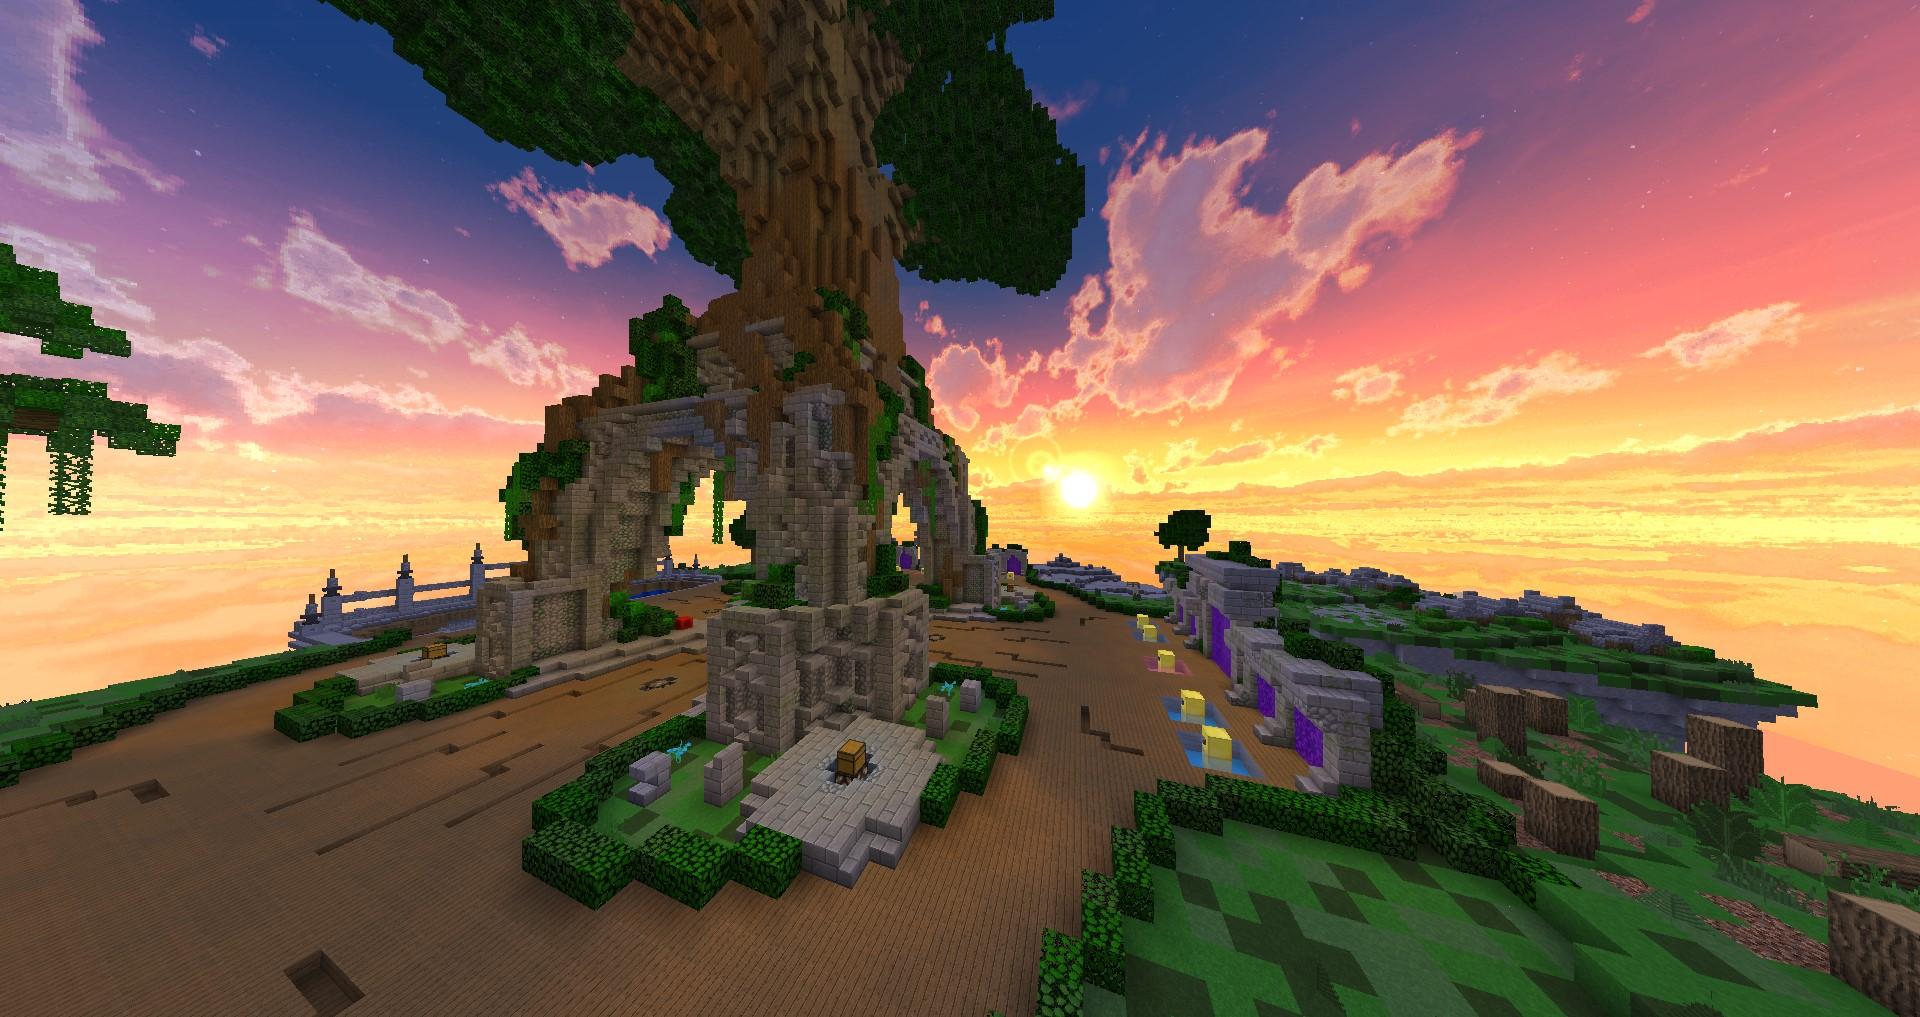 「Minecraft」 夕暮れ時に崖の近くに立つ巨大な木の画像。